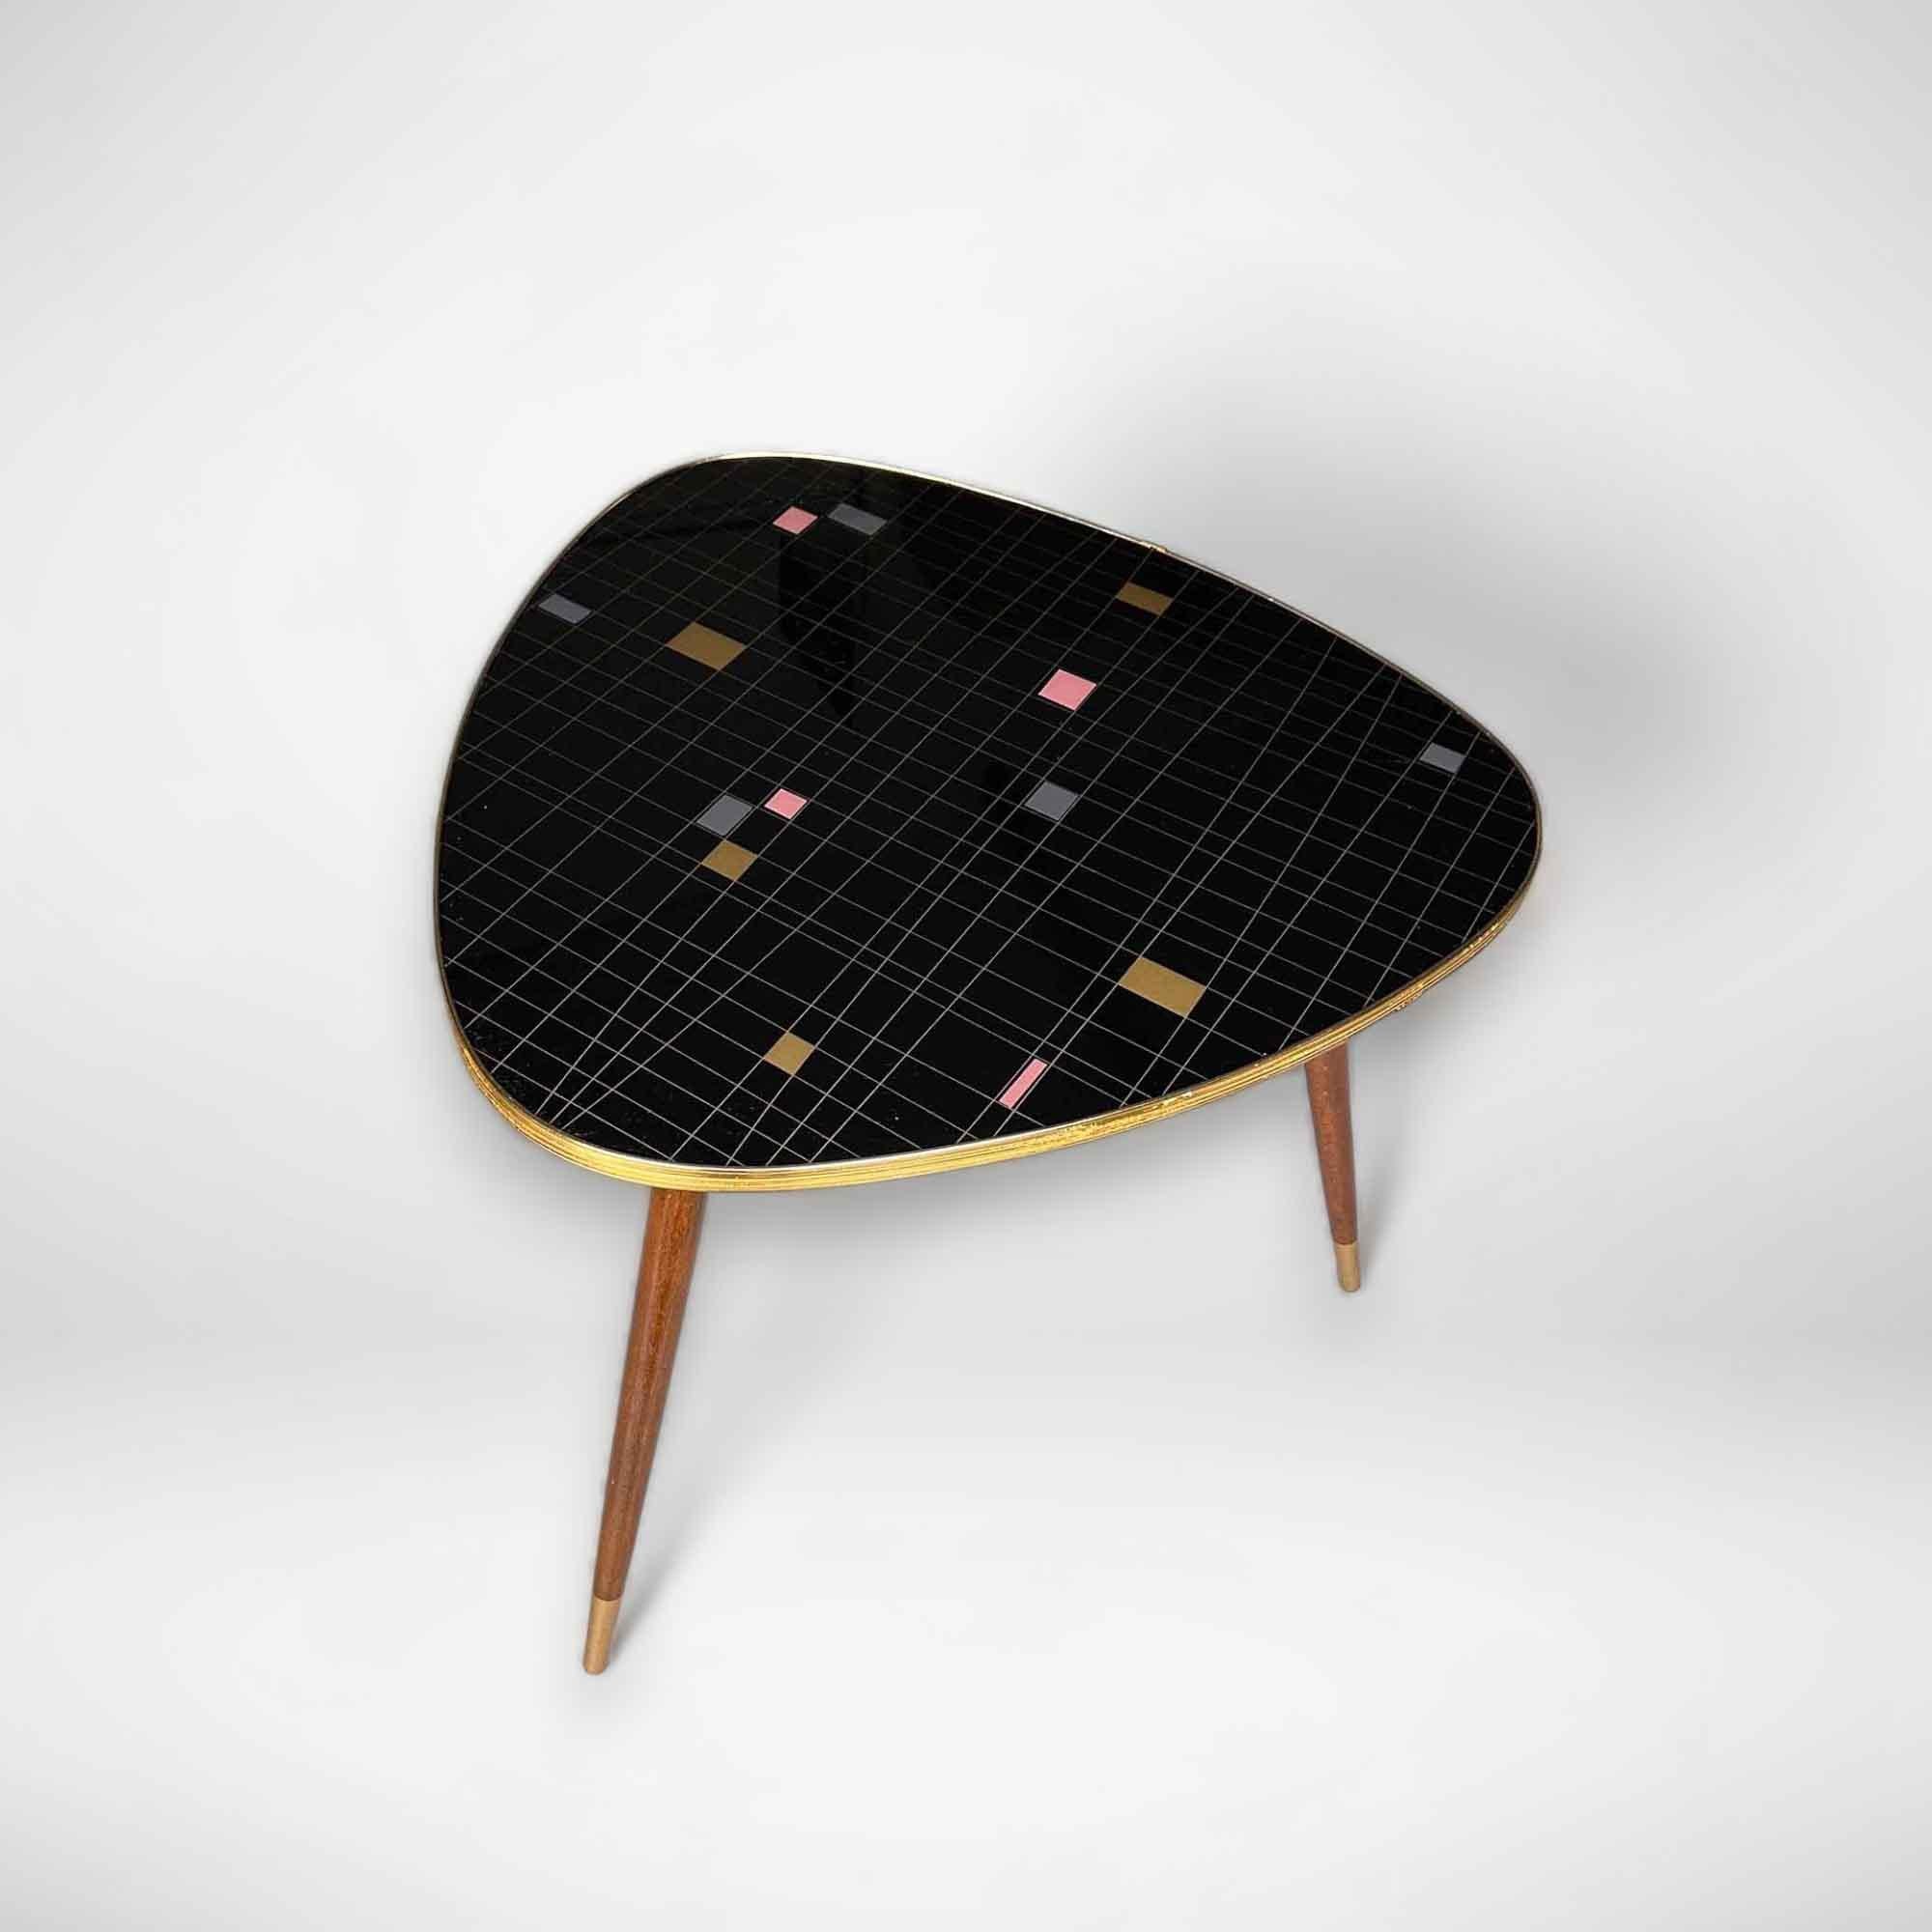 Une belle table basse des années 50 avec une illustration en or, gris et rose sur fond noir. Cette table vintage présente le bord doré typique et repose sur 3 solides pieds en bois. Le style de cette table d'appoint est également appelé